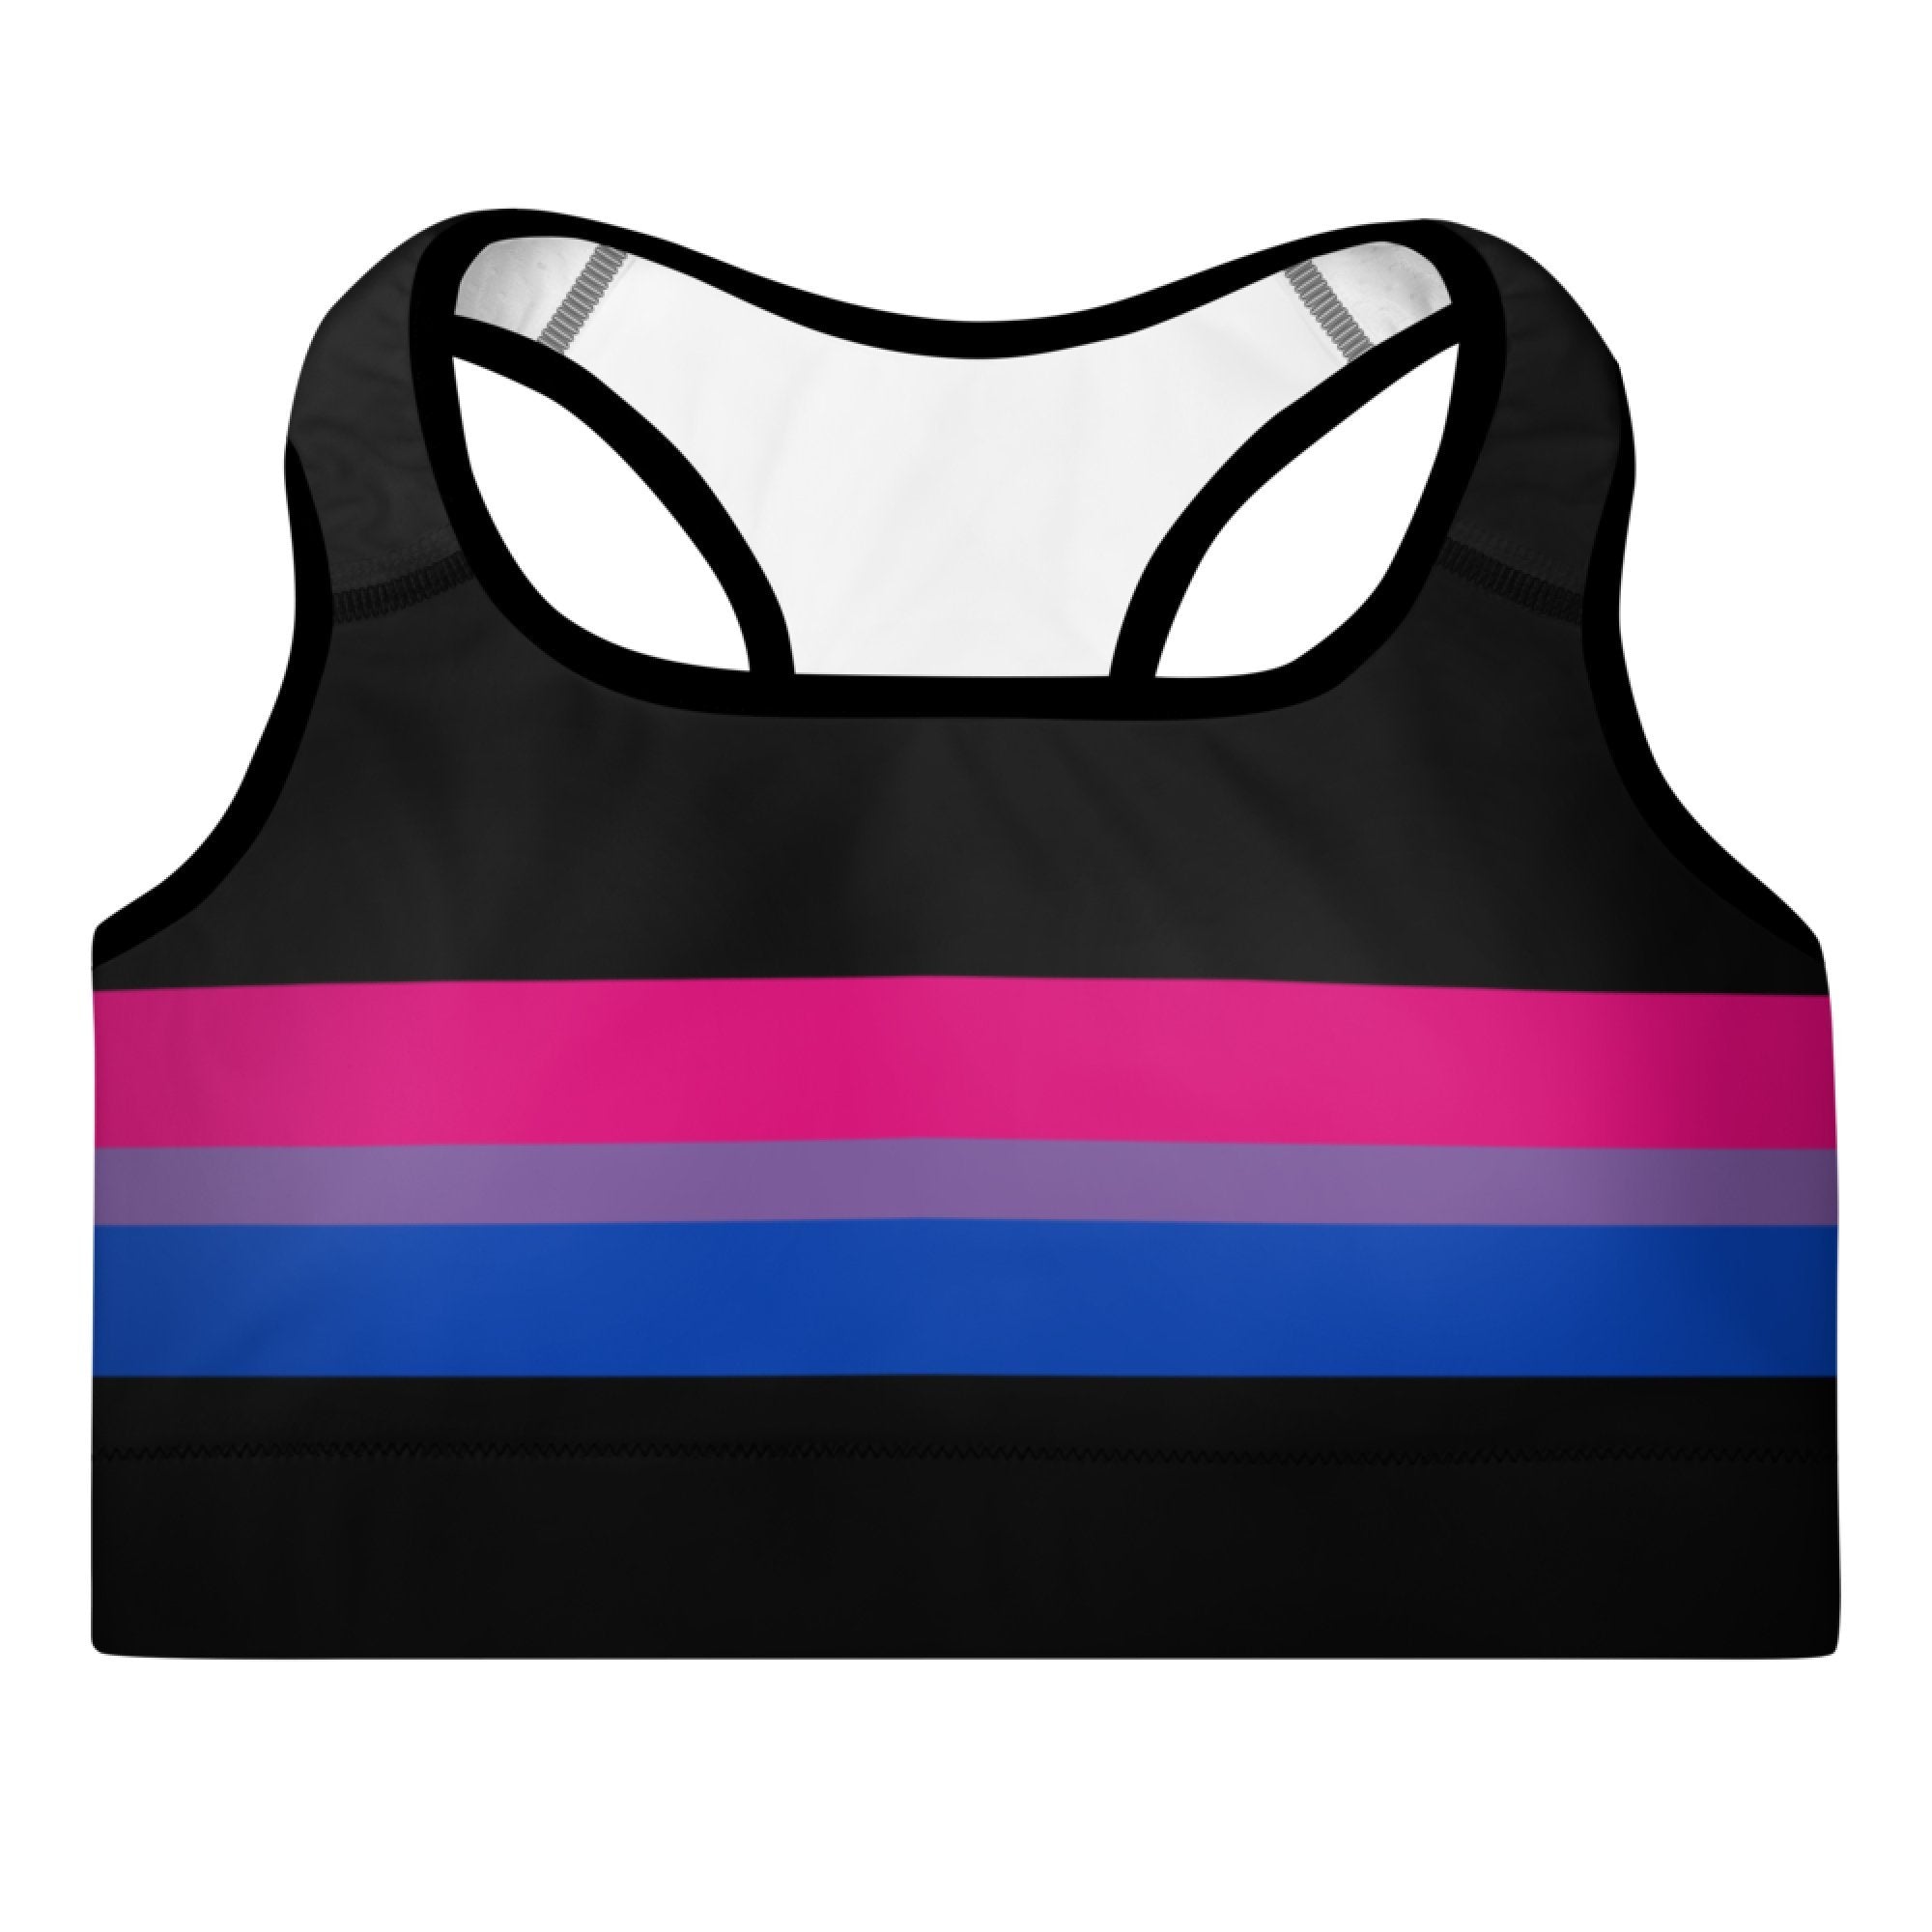 Progress Flag LGBTQ Sports Bra Women's Size - 2XL